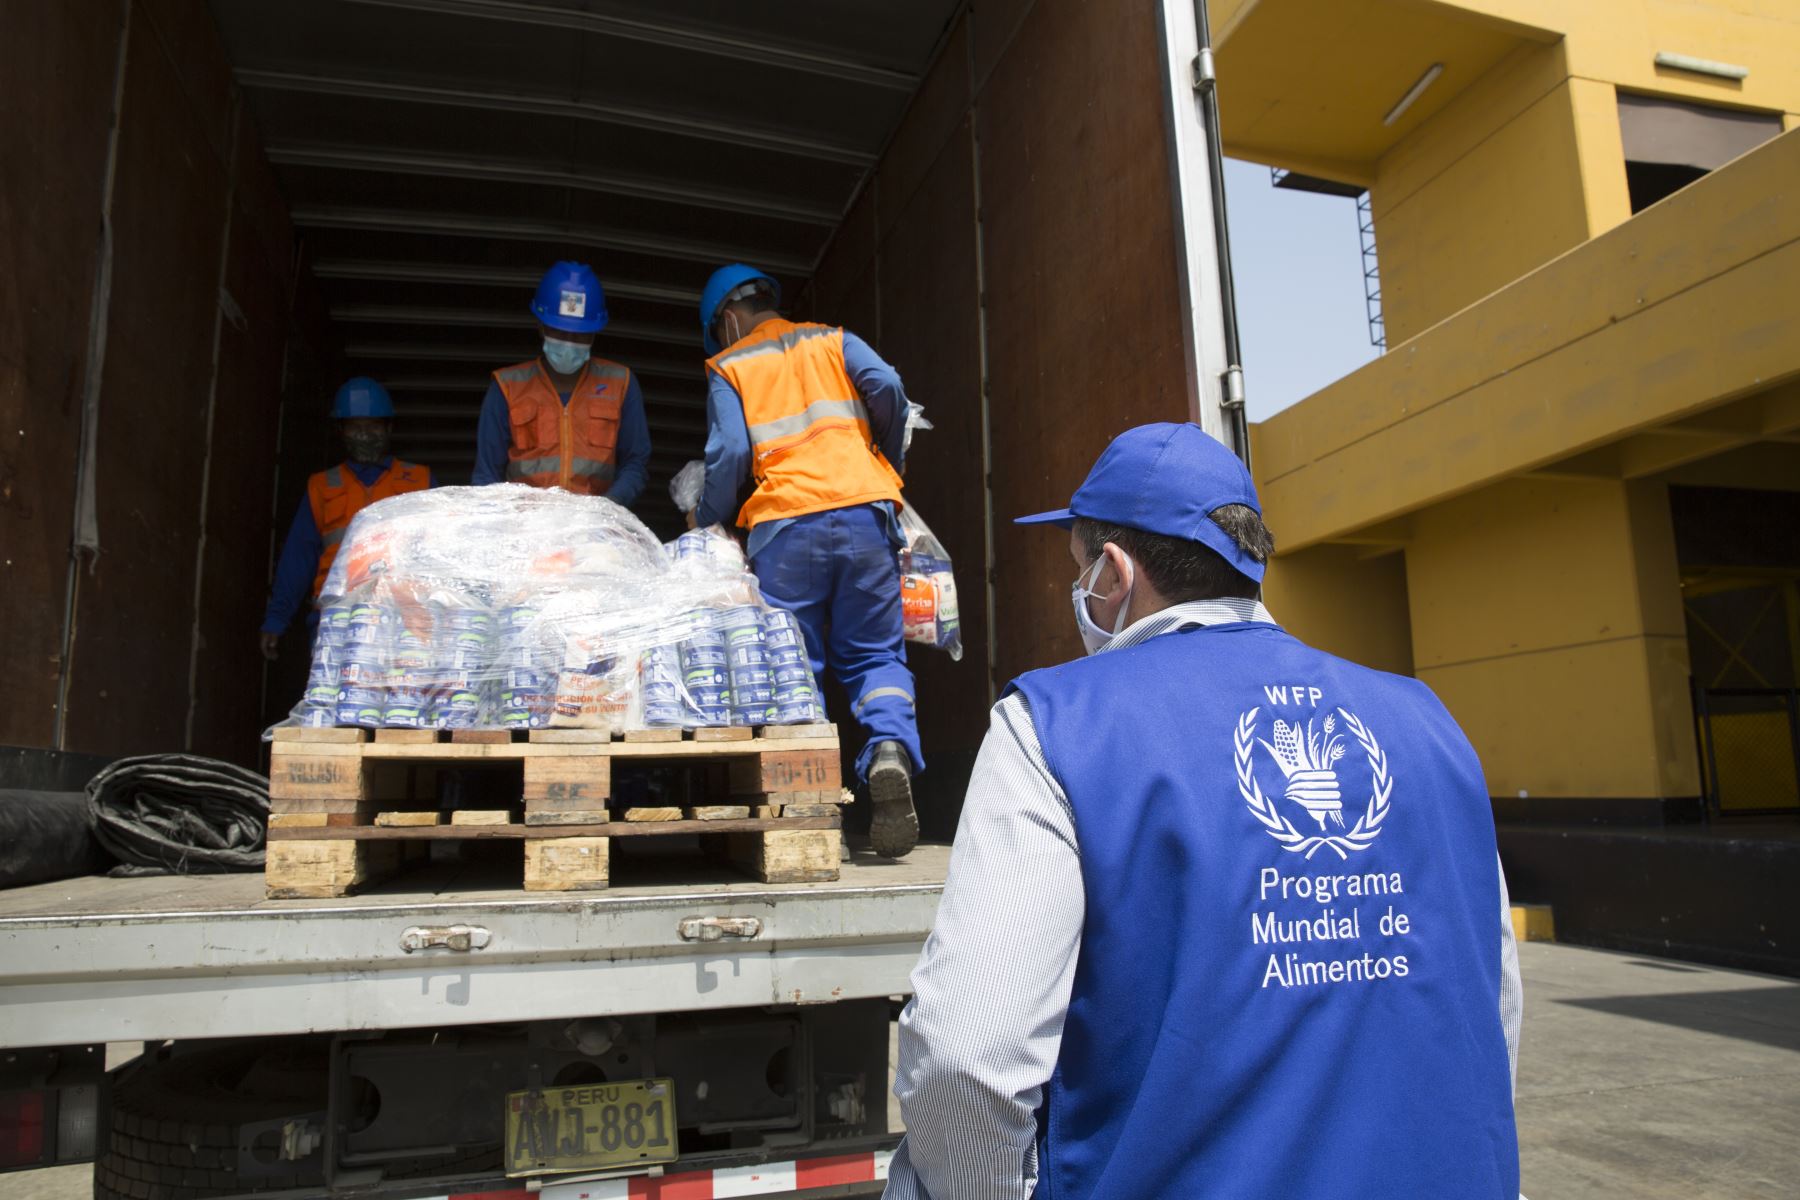 Programa Mundial de Alimentos brinda ayuda humanitaria a ciudadanos venezolanos que viven en seis regiones. Foto: cortesía.